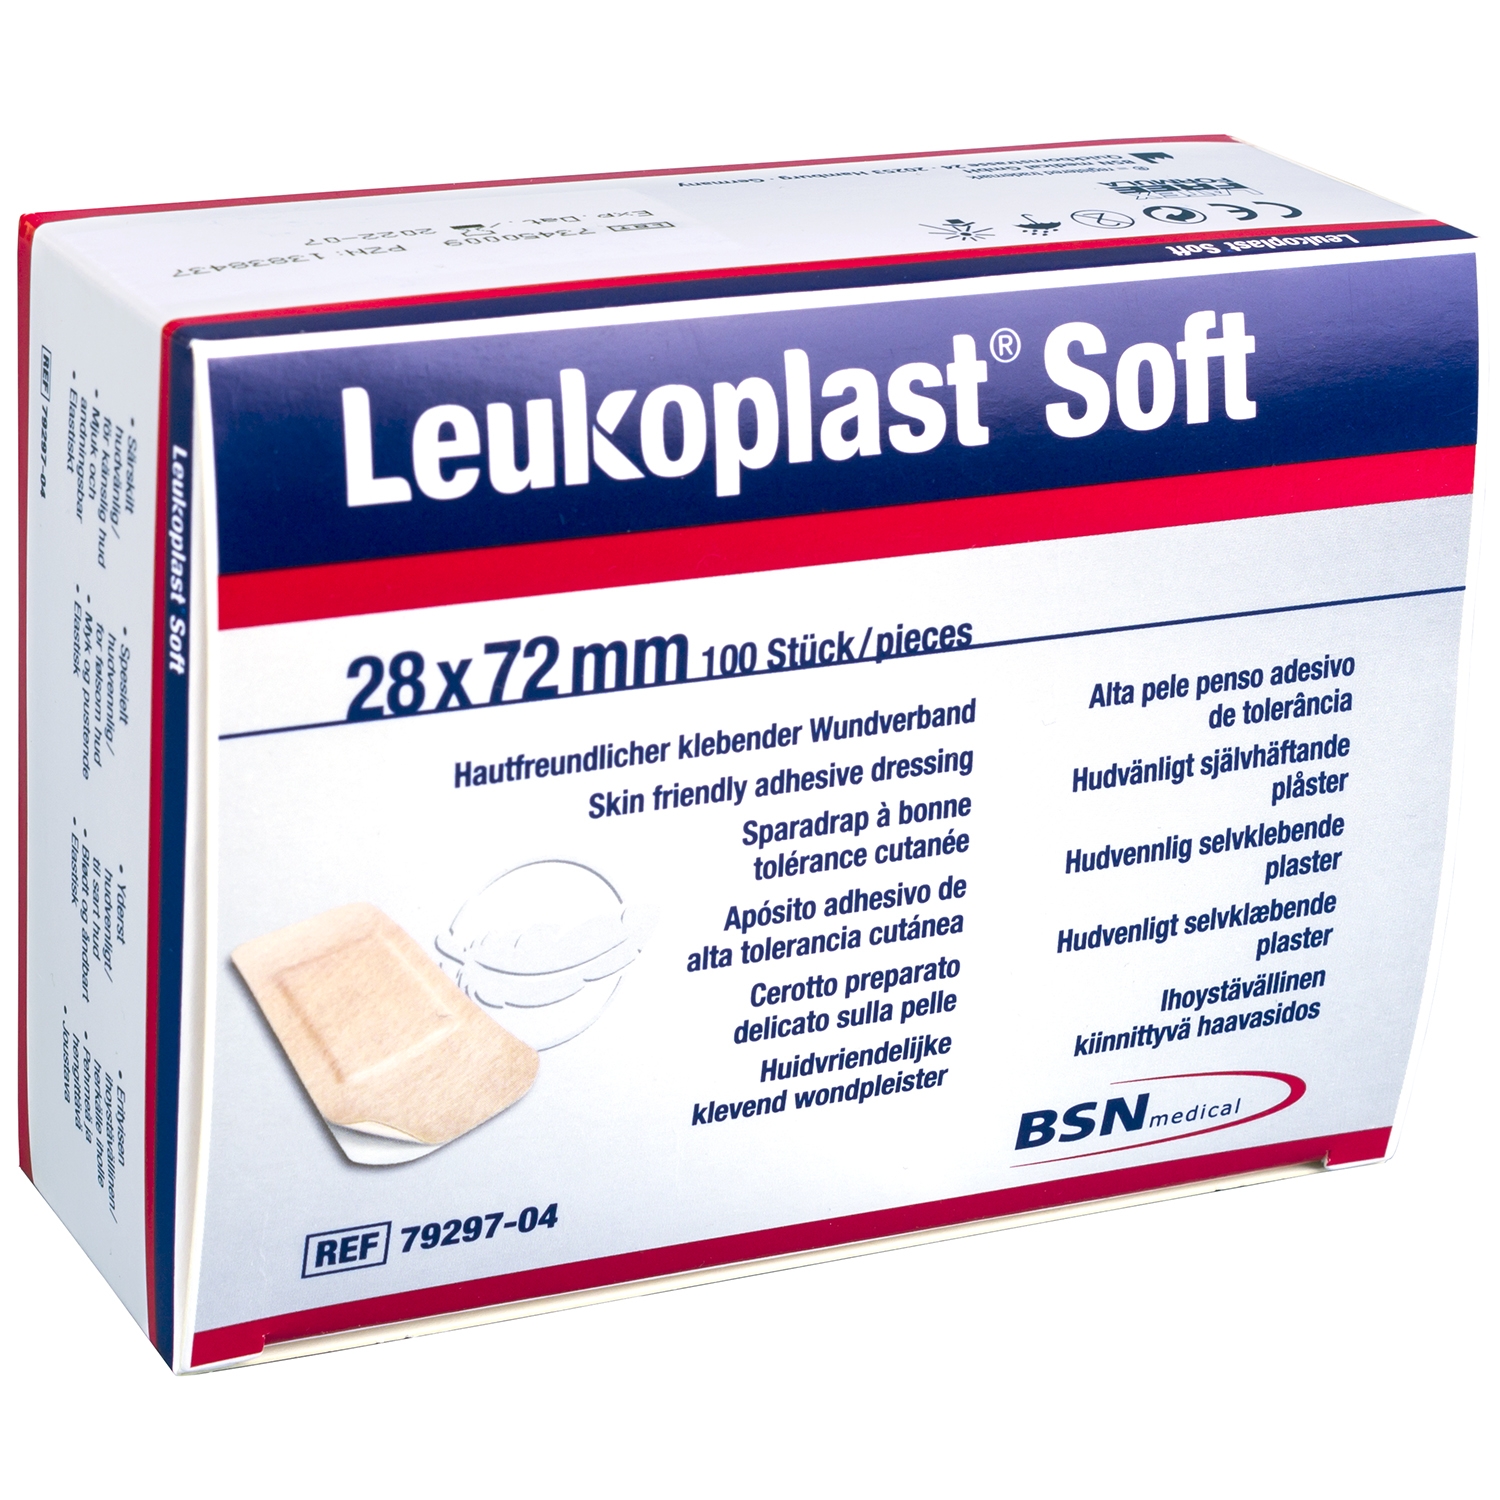 Leukoplast soft - 28 x 72 mm (100 pcs)